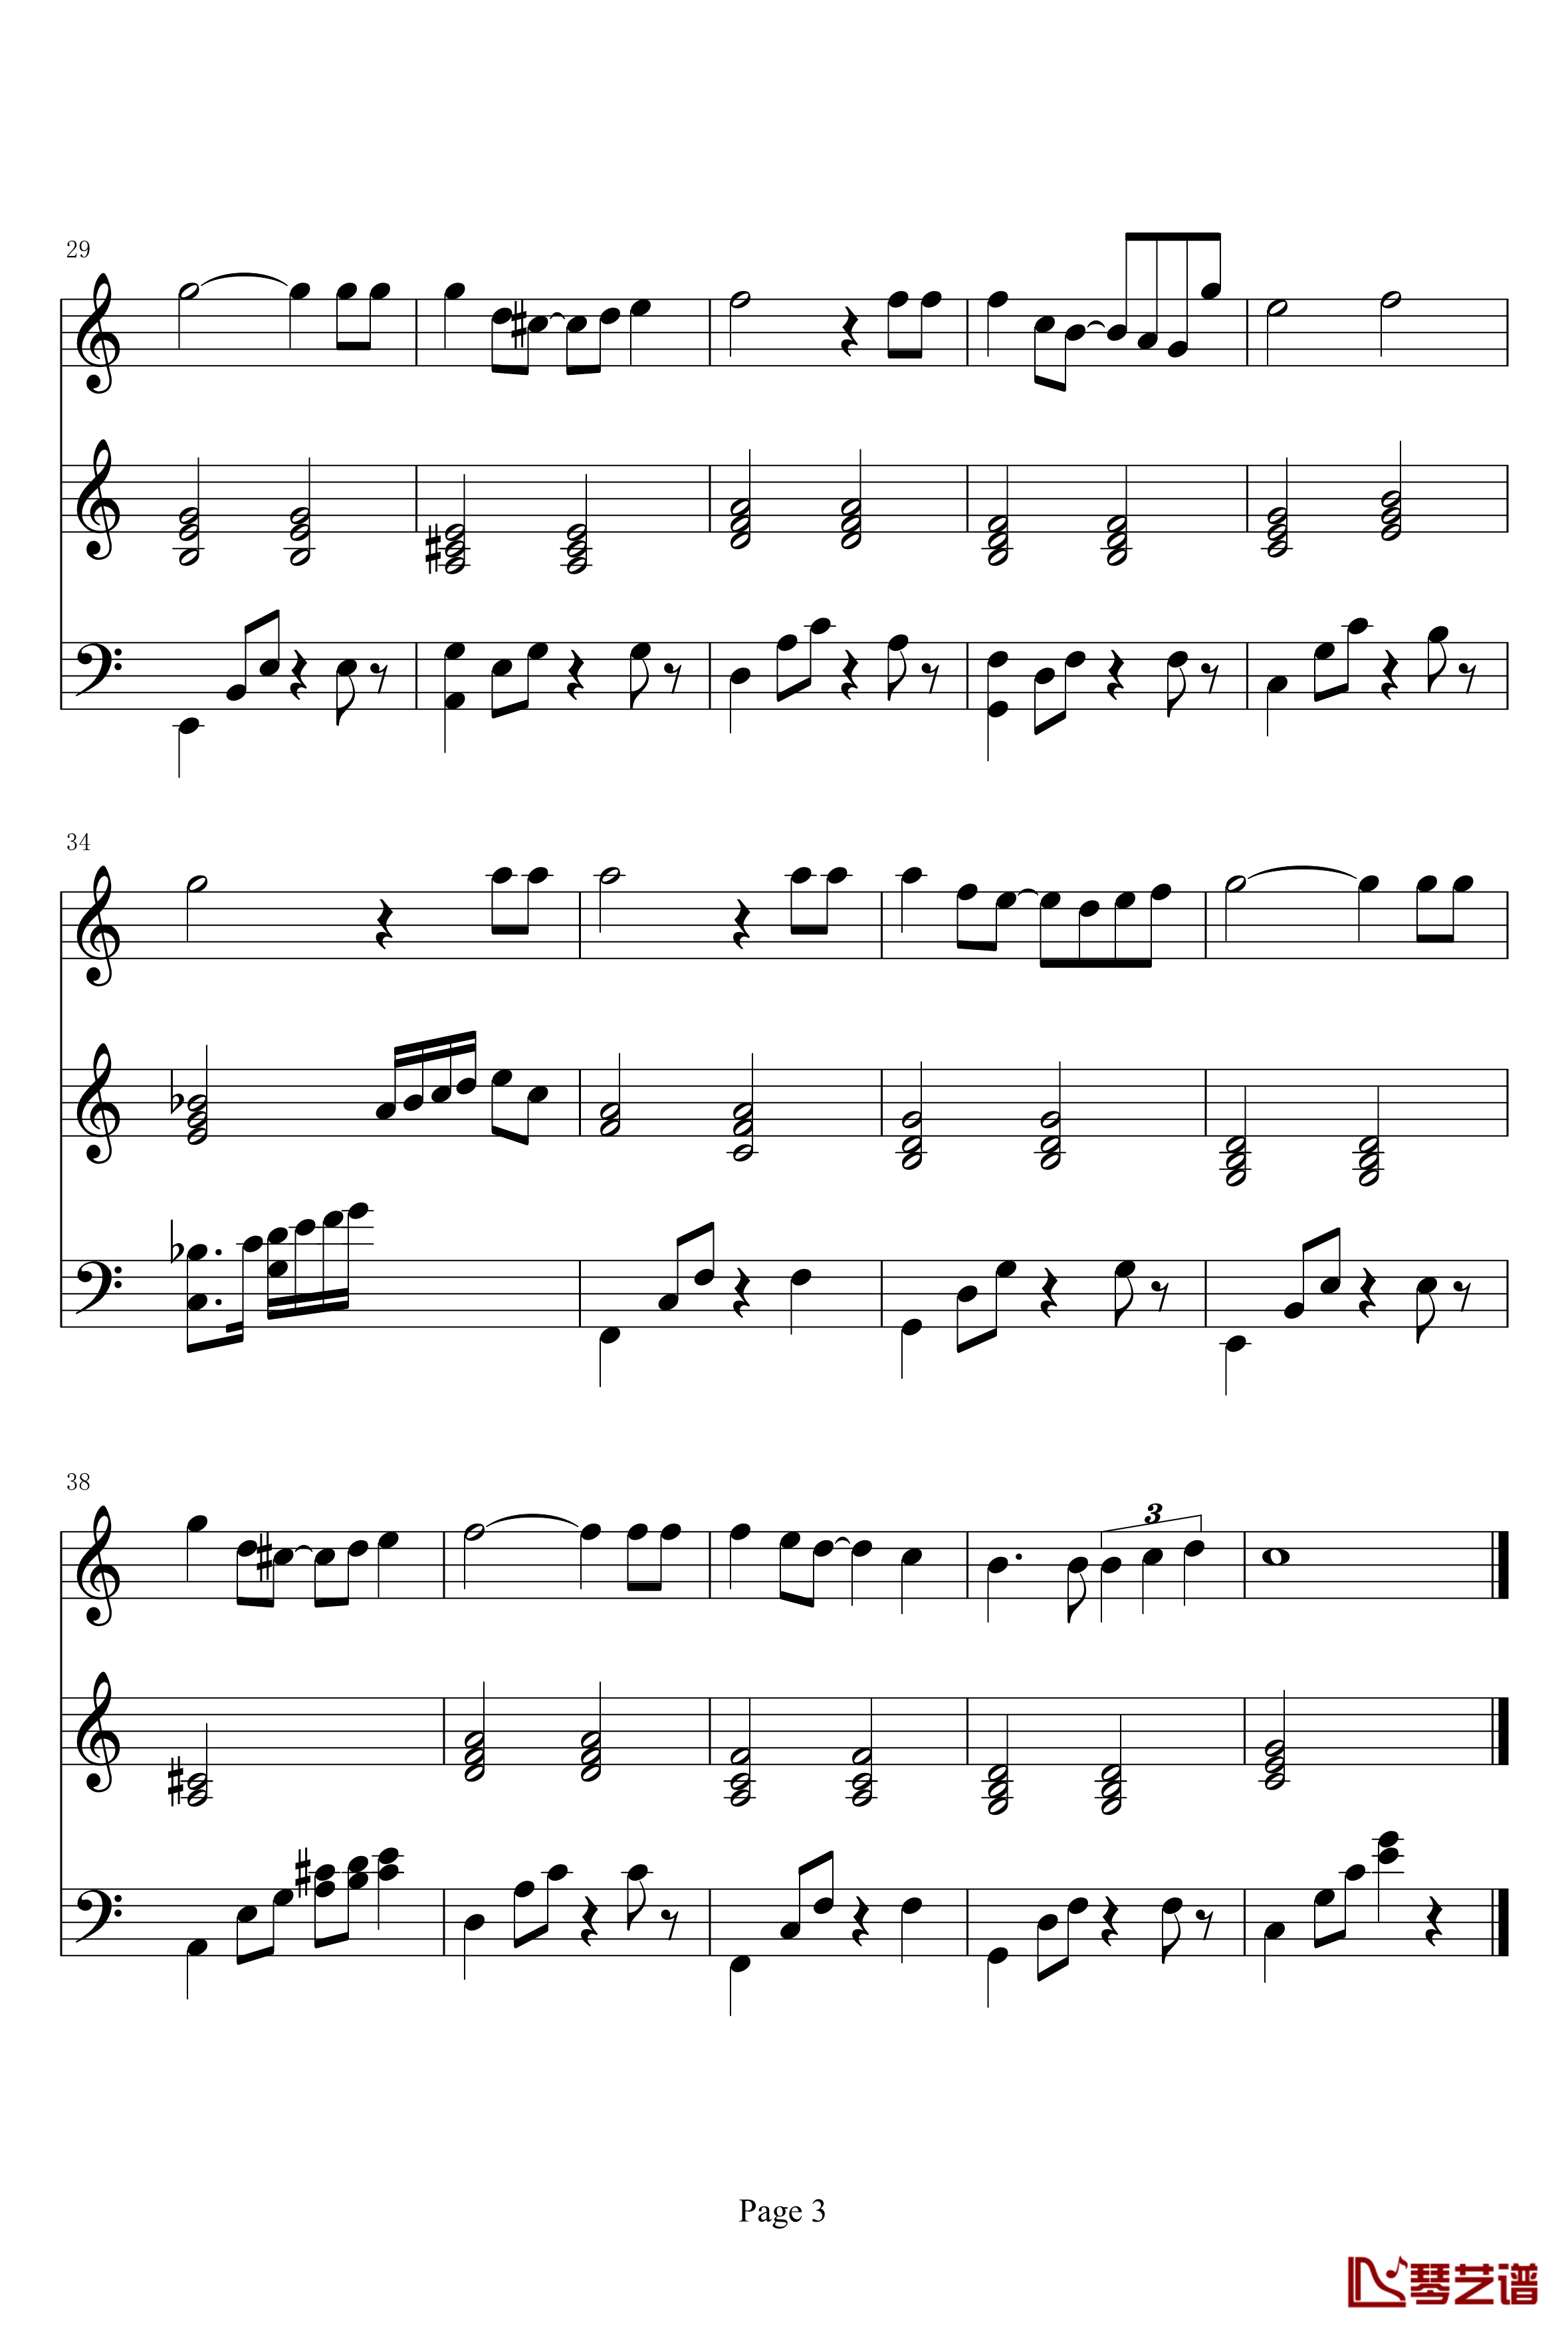 忘夏钢琴谱-分享曲目-未知分类3